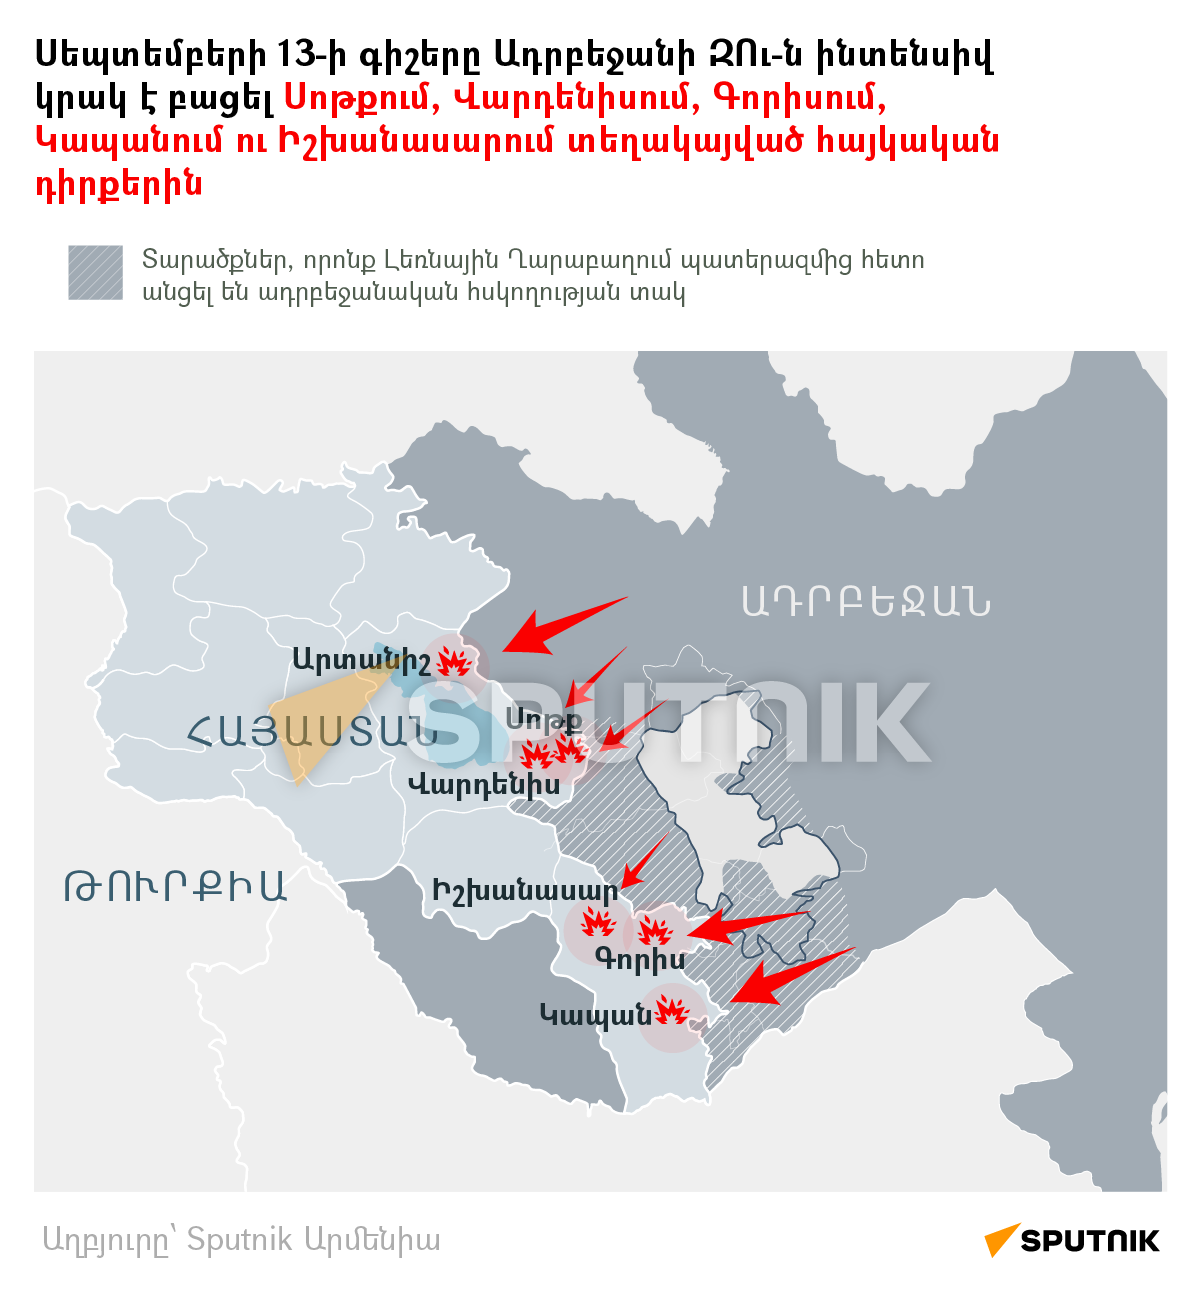 Սեպտեմբերի 13-ի գիշերը Ադրբեջանի ԶՈւ-ն ինտենսիվ կրակ է բացել Սոթքում, Վարդենիսում, Գորիսում, Կապանում ու Իշխանասարում տեղակայված հայկական դիրքերին - Sputnik Արմենիա